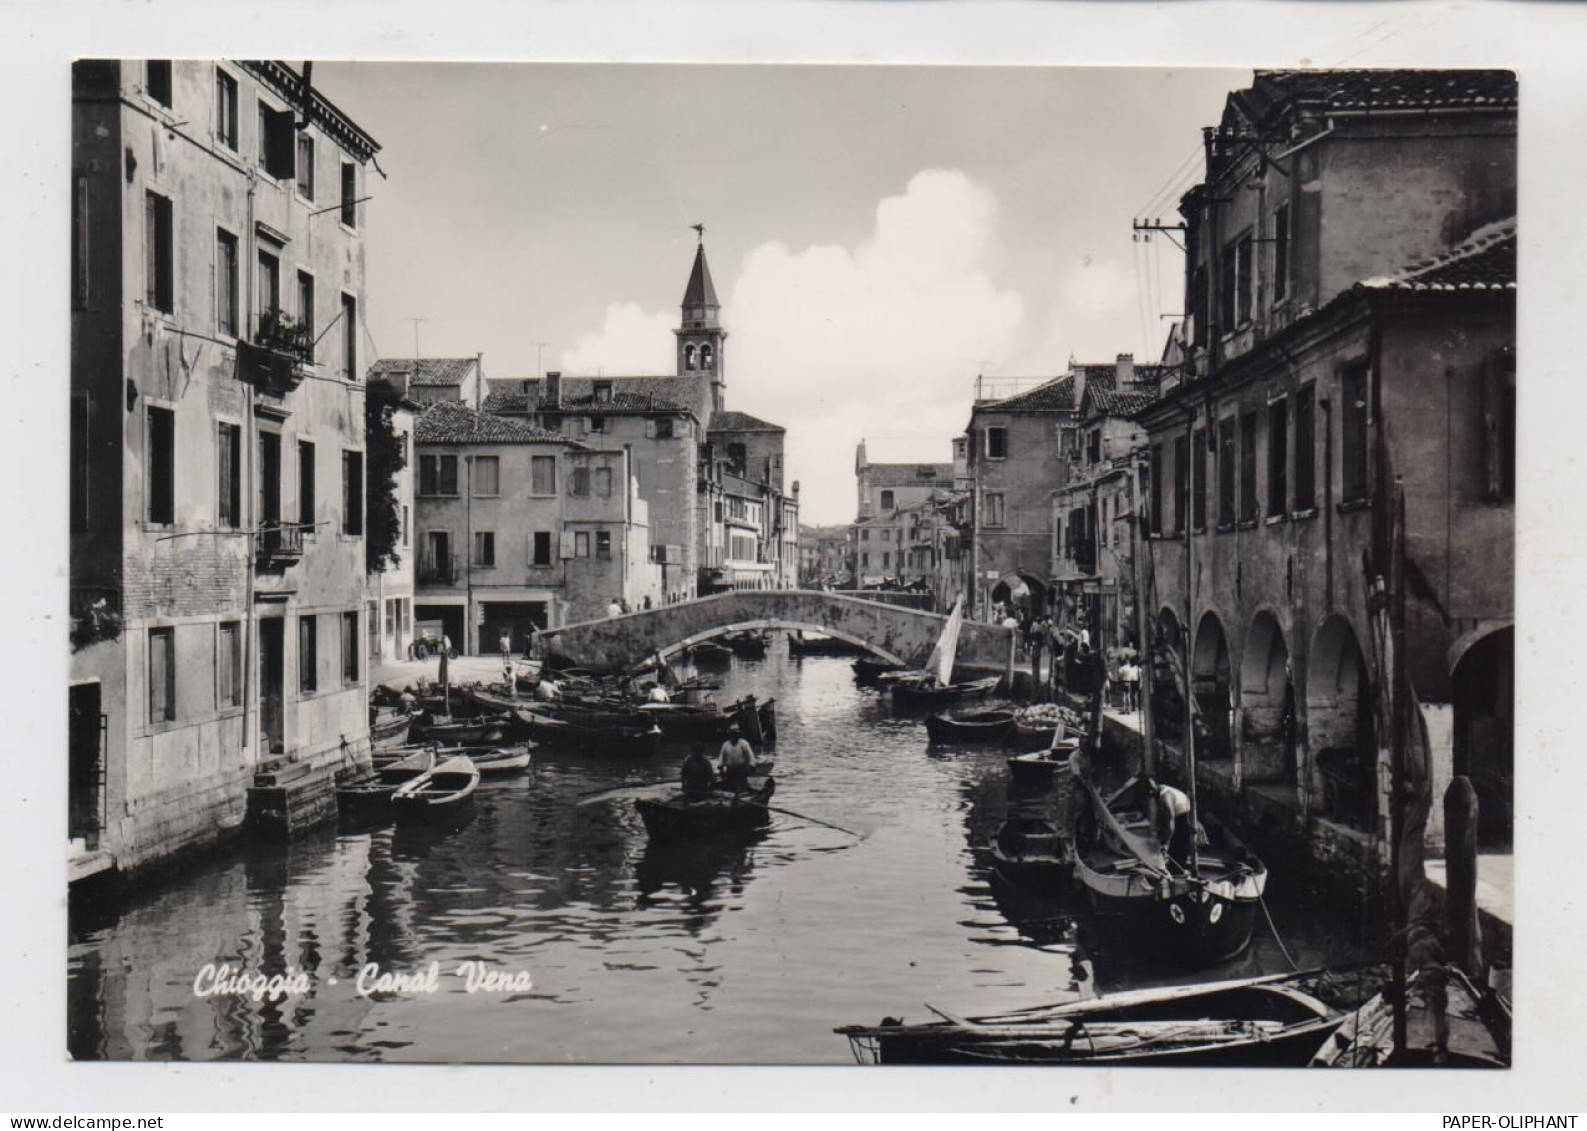 I 30015 CHIOGGIA, Canal Vena , 1959 - Chioggia